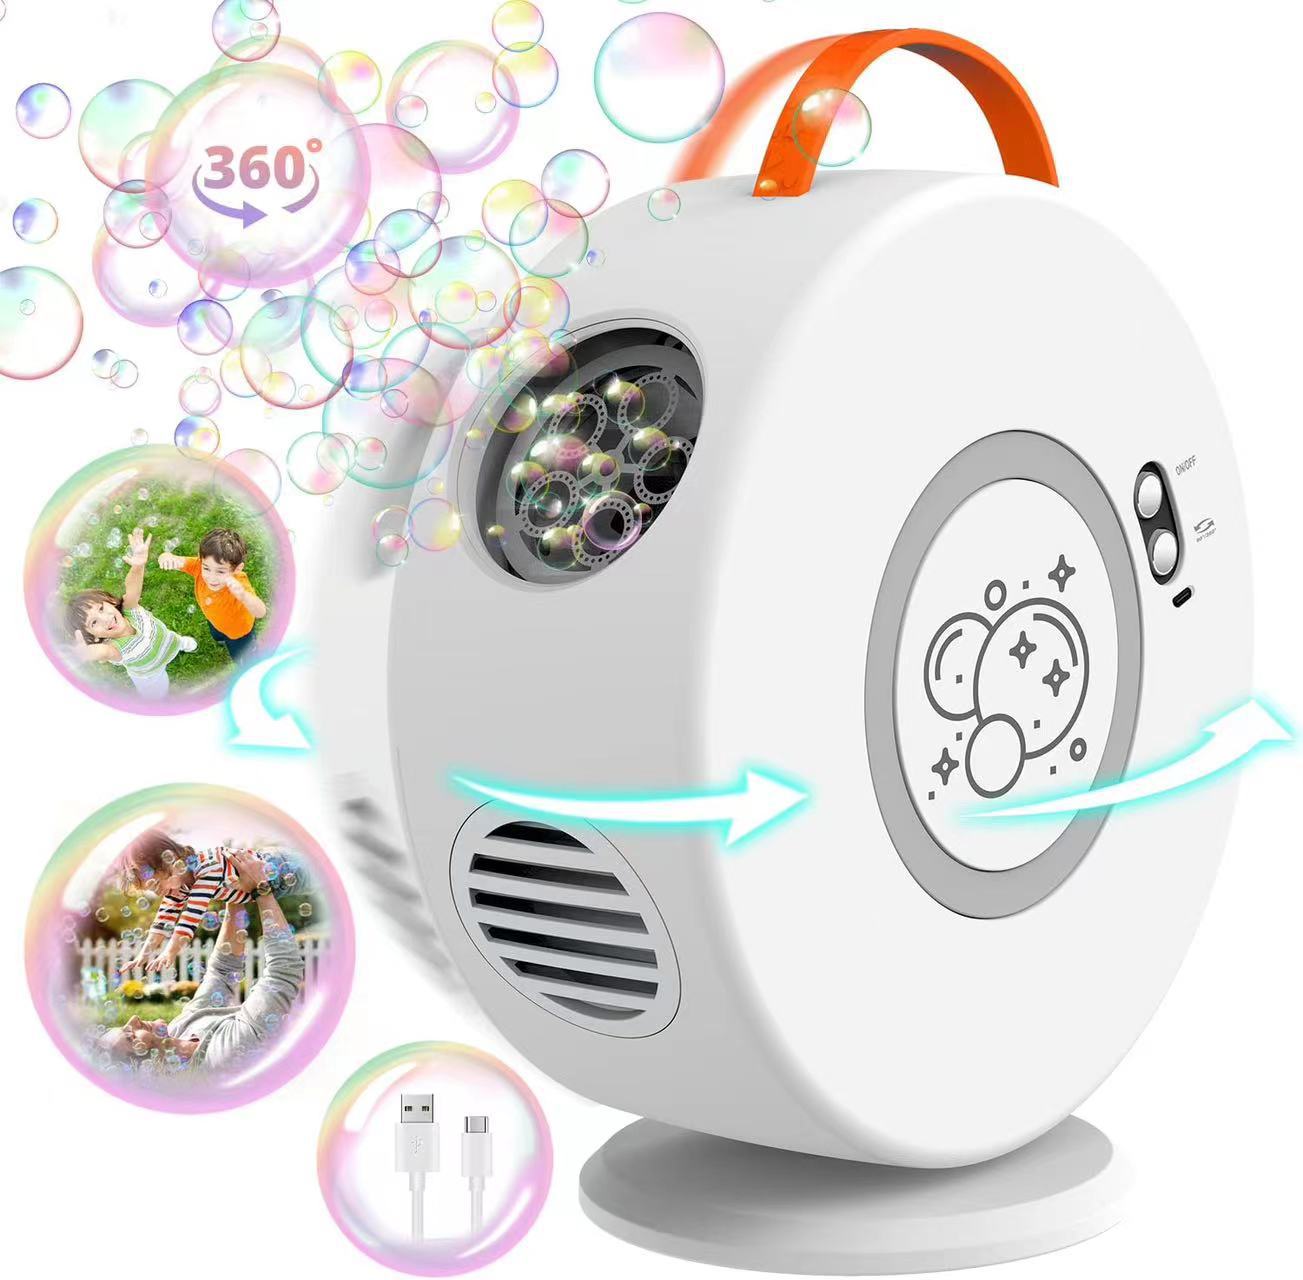 Astronaut Bubble Machine Hot Sale Children's Full-Automatic Rechargeable Electric Outdoor Bubbler Bubble Mixture Toys Wholesale